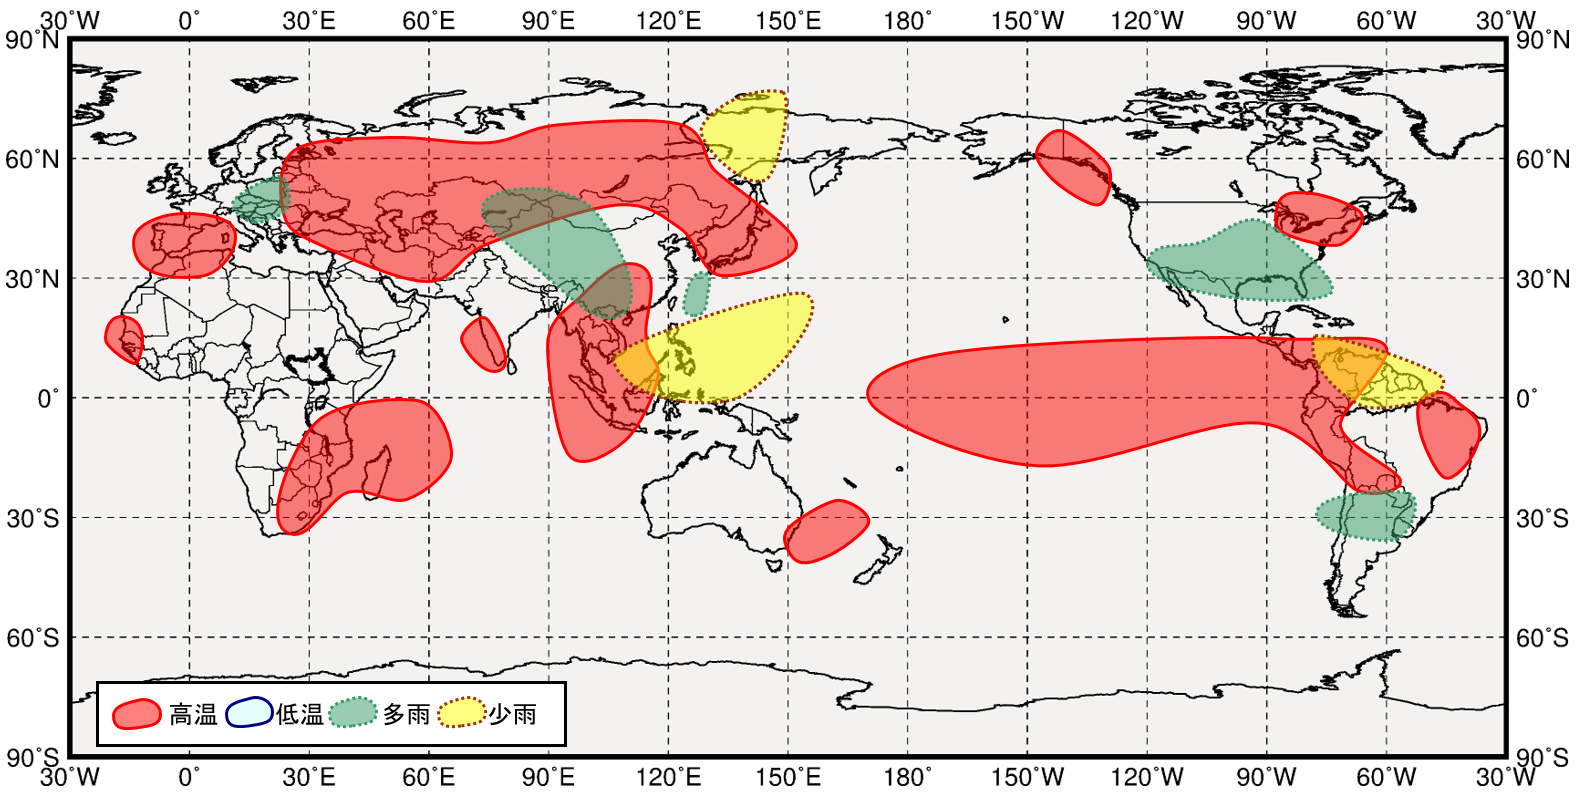 西太平洋熱帯域が低温時の世界の１２月から２月にかけての気温と降水量の傾向の分布図